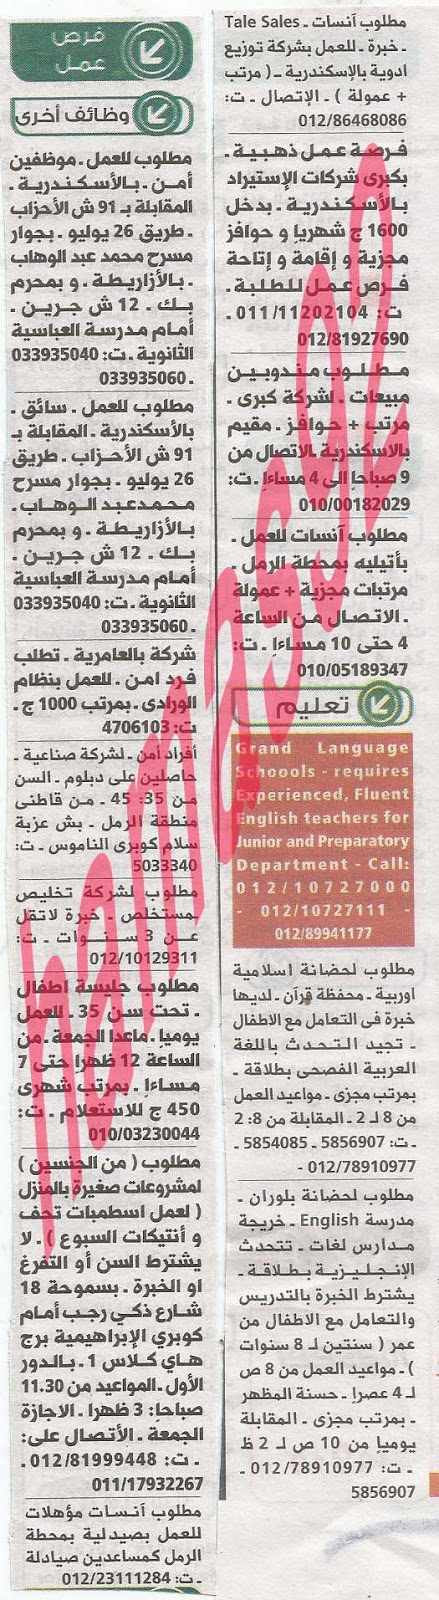 وظائف خالية فى جريدة الوسيط الاسكندرية الجمعة 26-07-2013 %D9%88+%D8%B3+%D8%B3+2